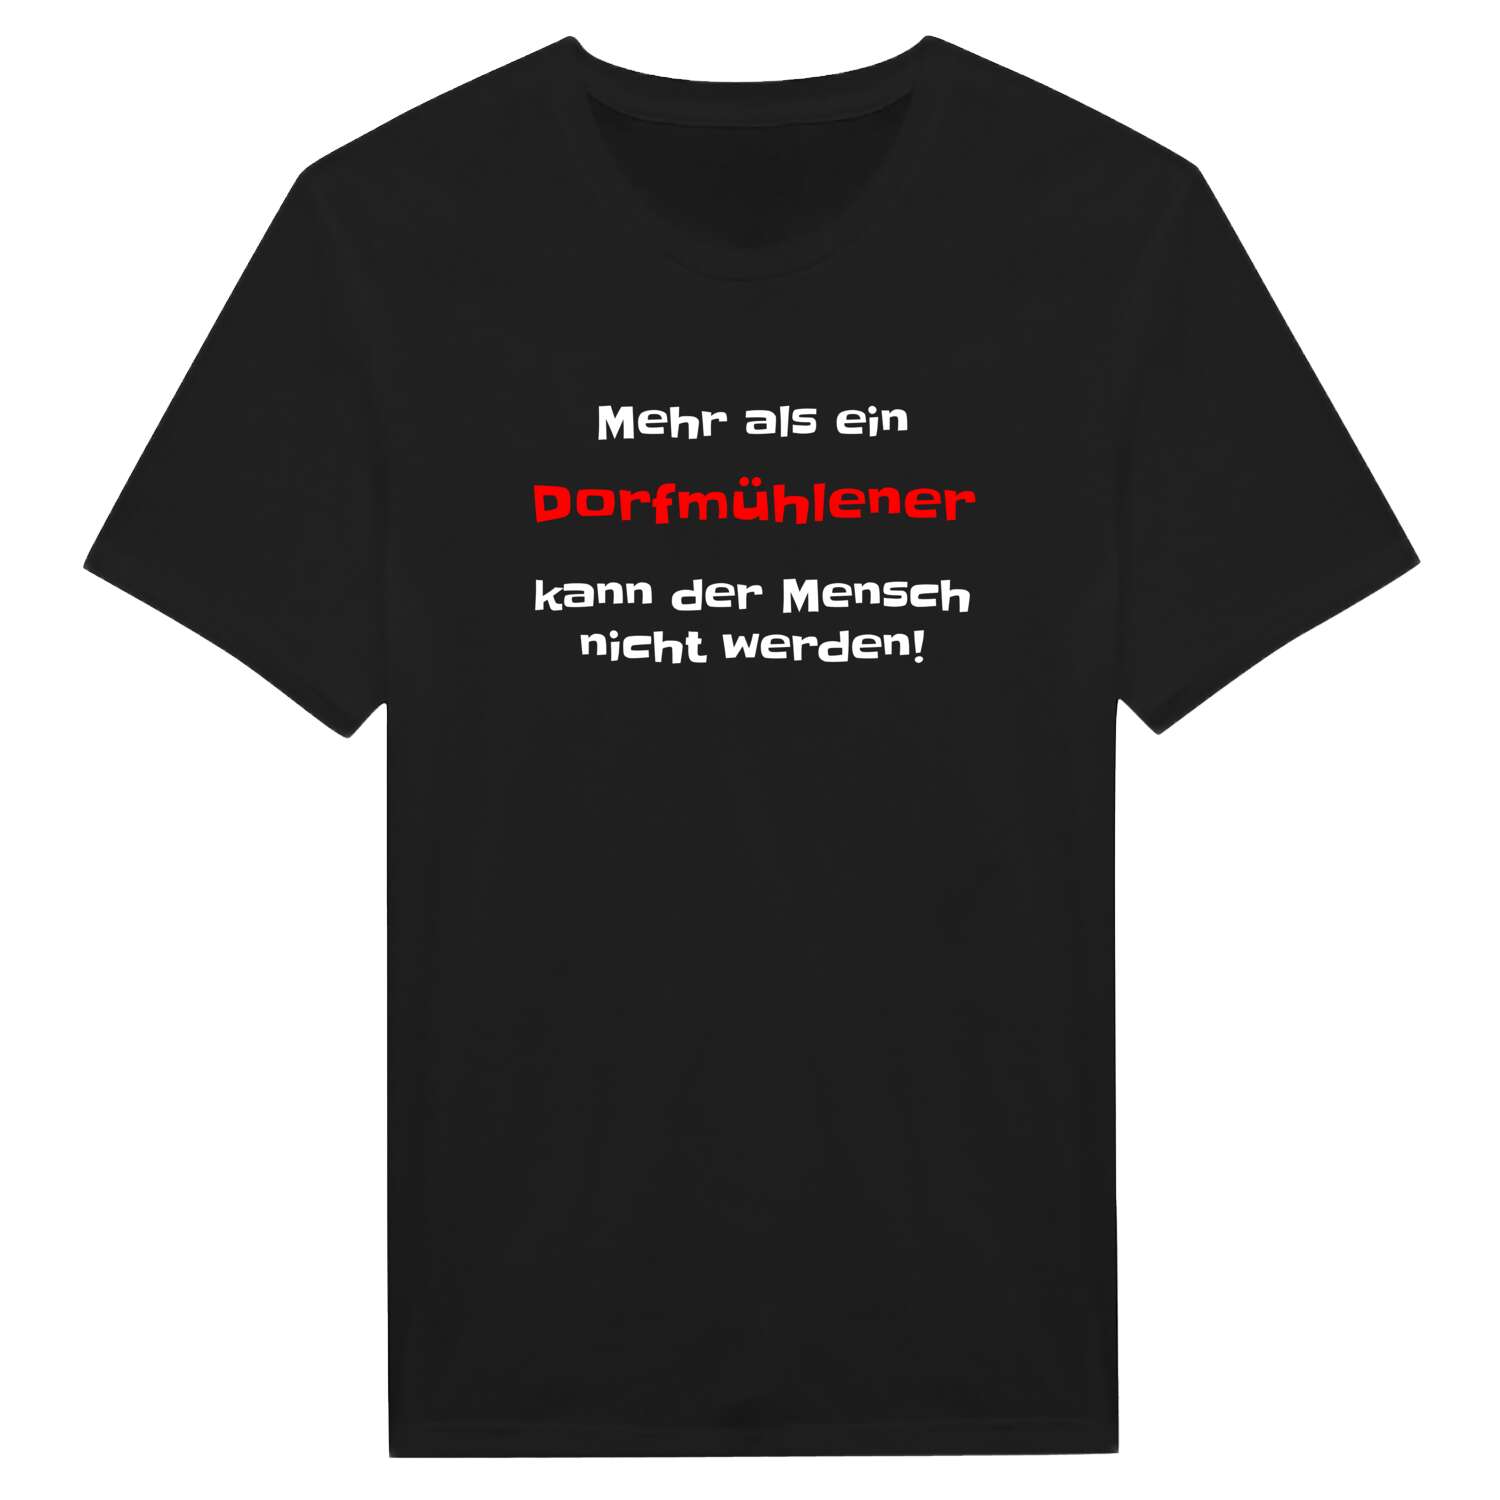 Dorfmühle T-Shirt »Mehr als ein«